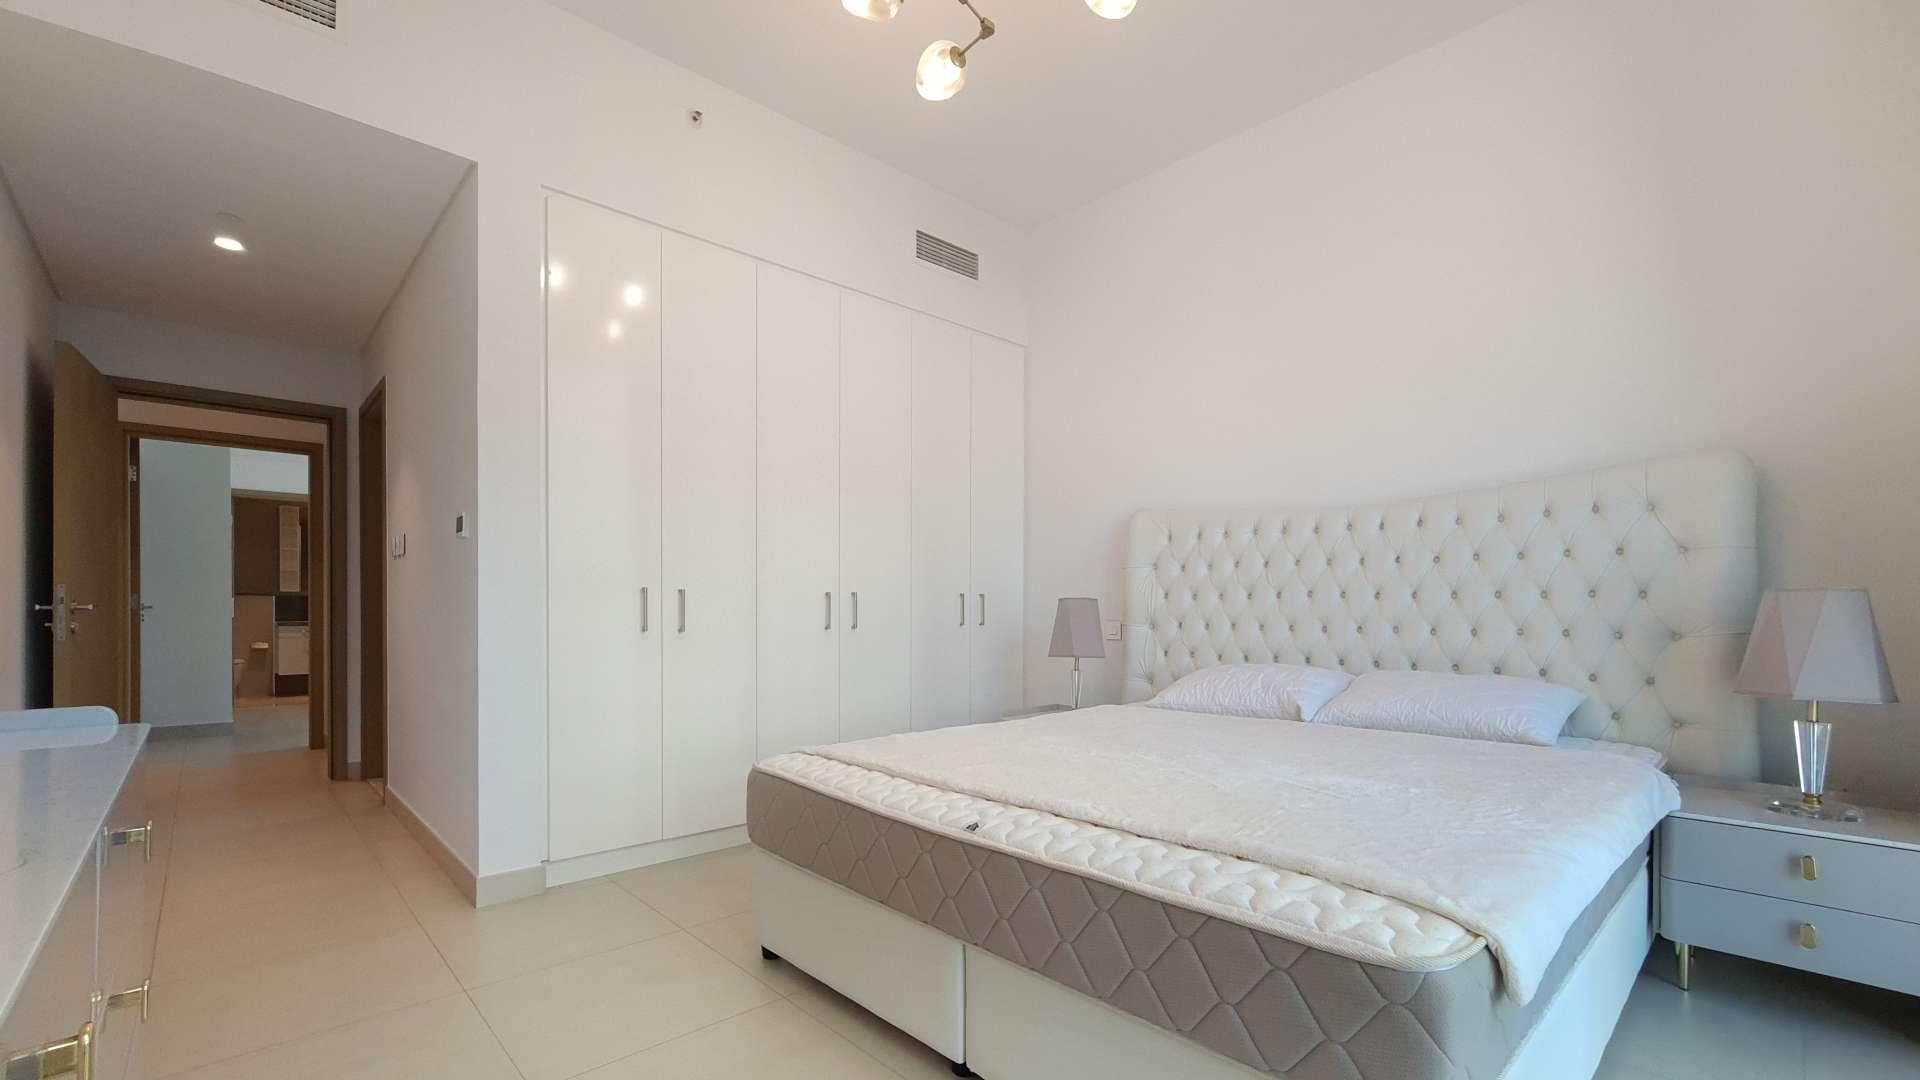 2 Bedroom Apartment For Rent Downtown Views Lp17633 318ec1f7a3d57200.jpg